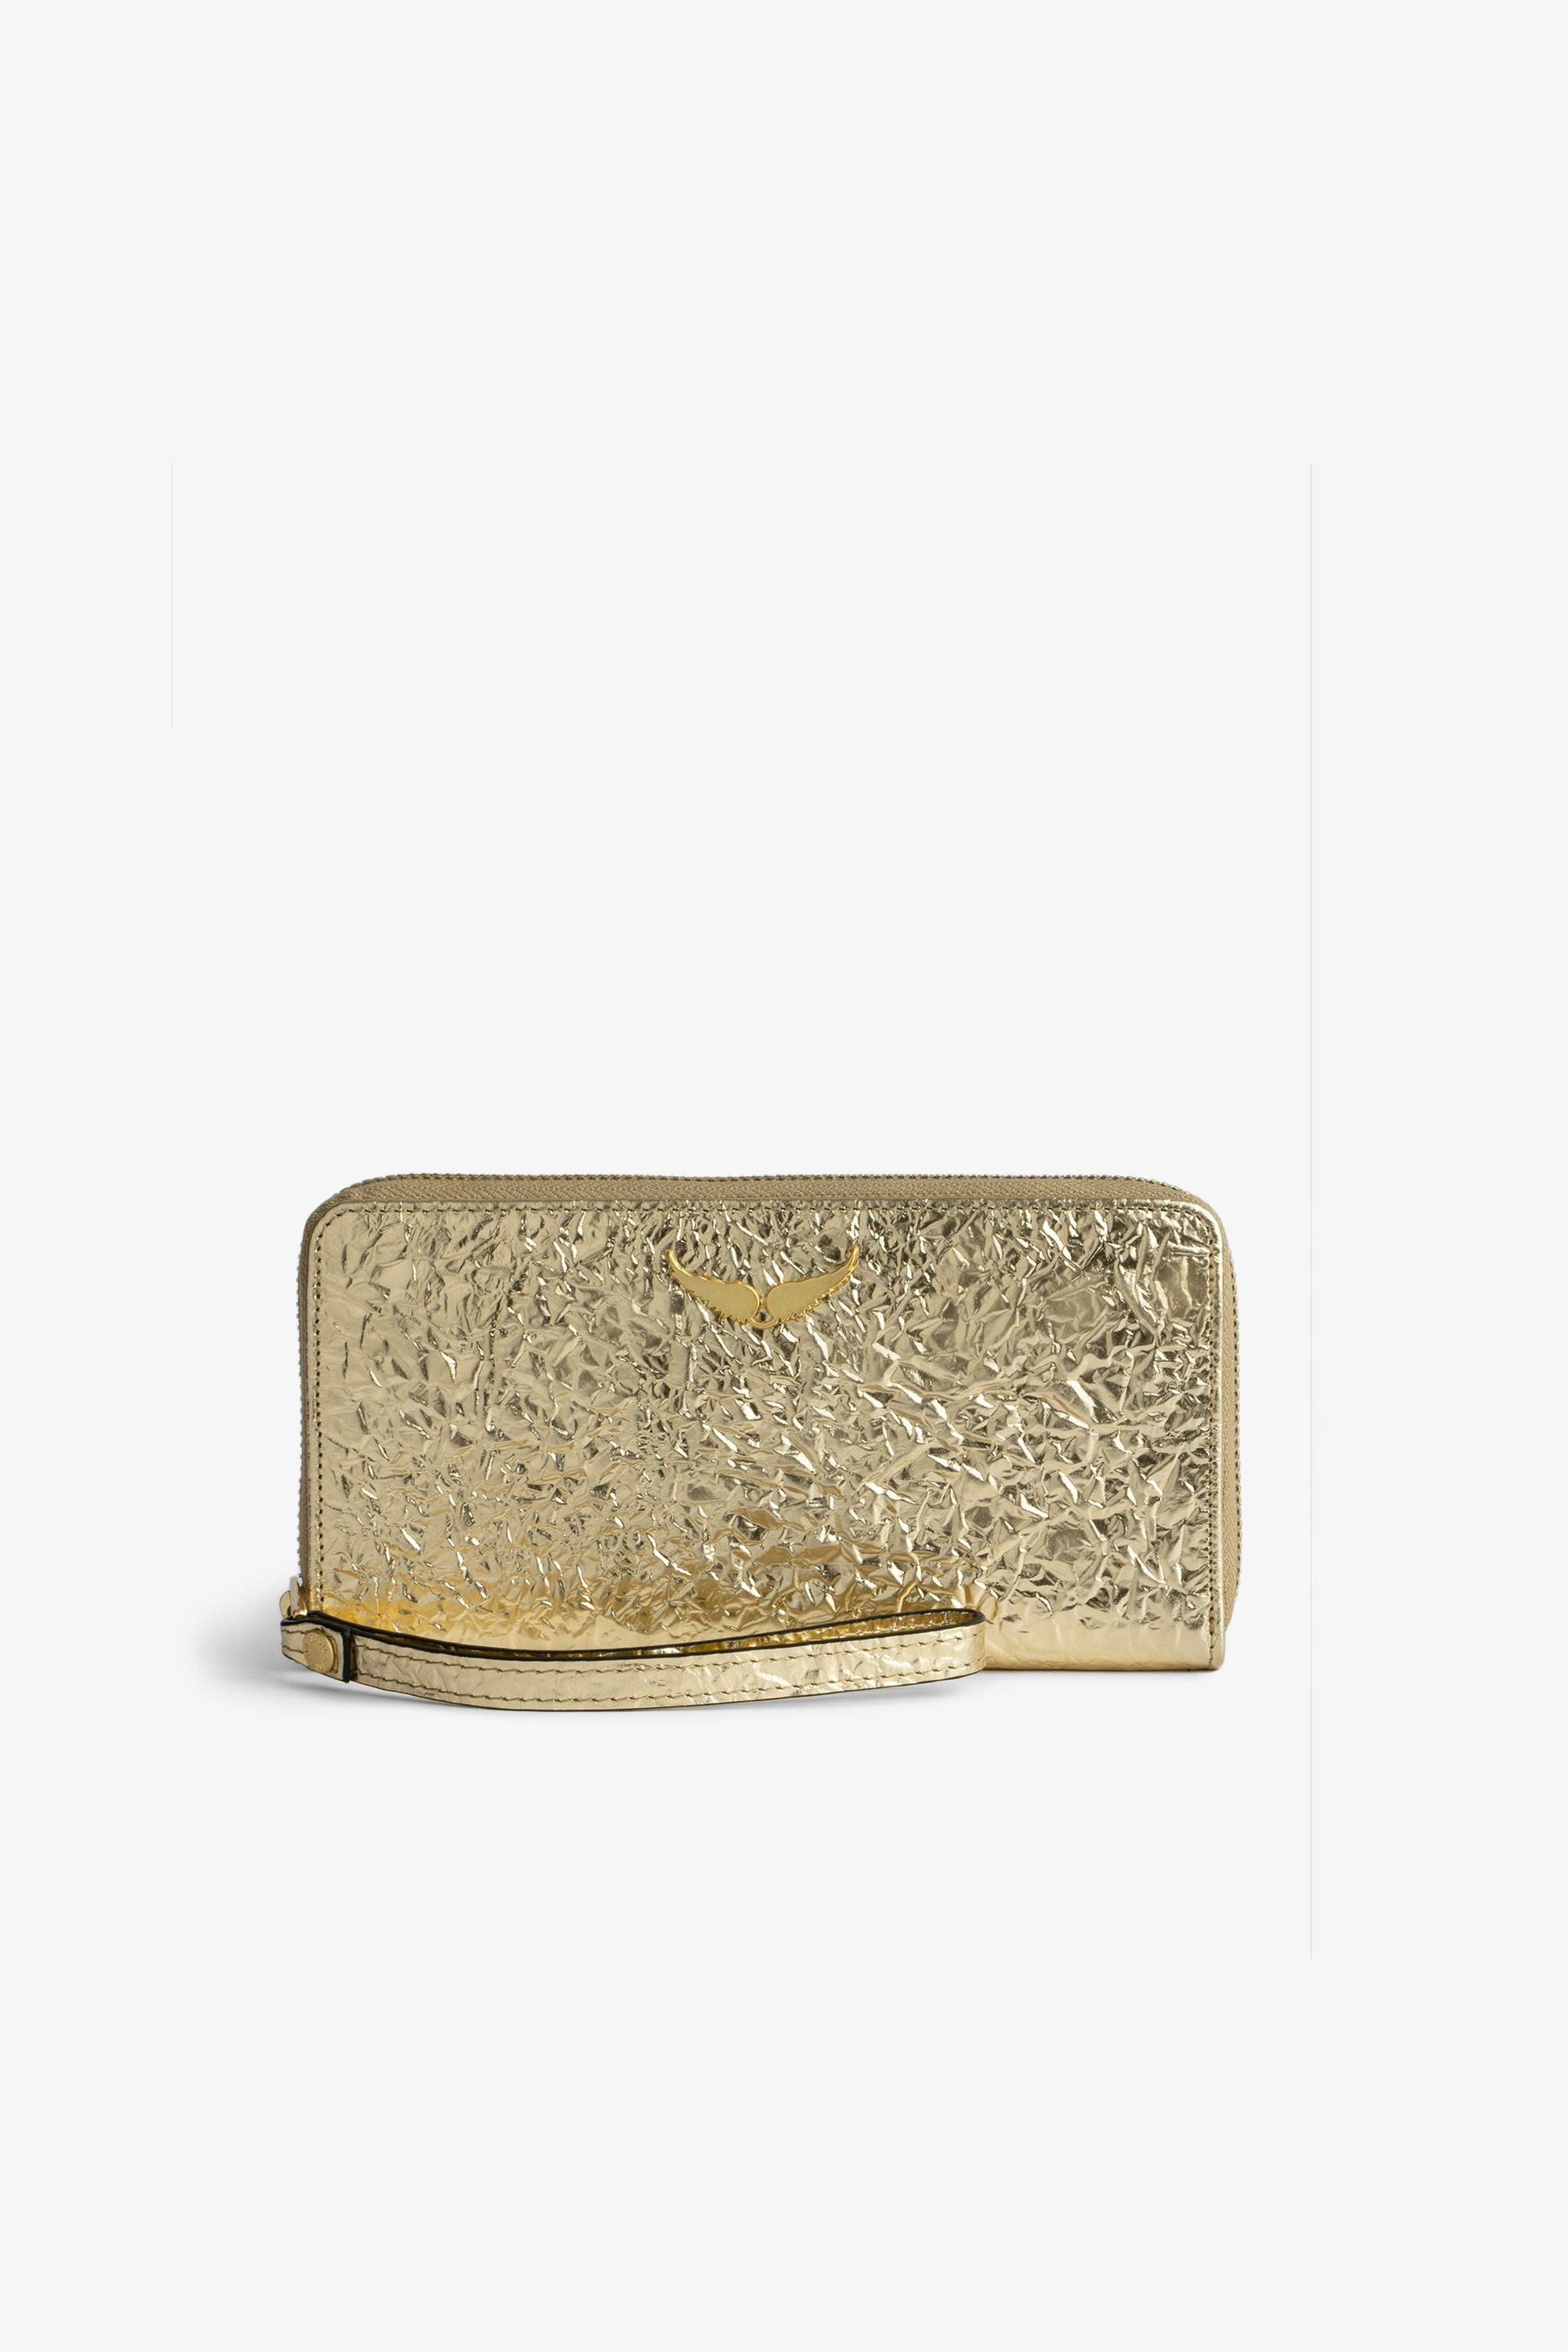 Brieftasche Compagnon Damen-Brieftasche Compagnon aus goldfarbenem Metallic-Knitterleder